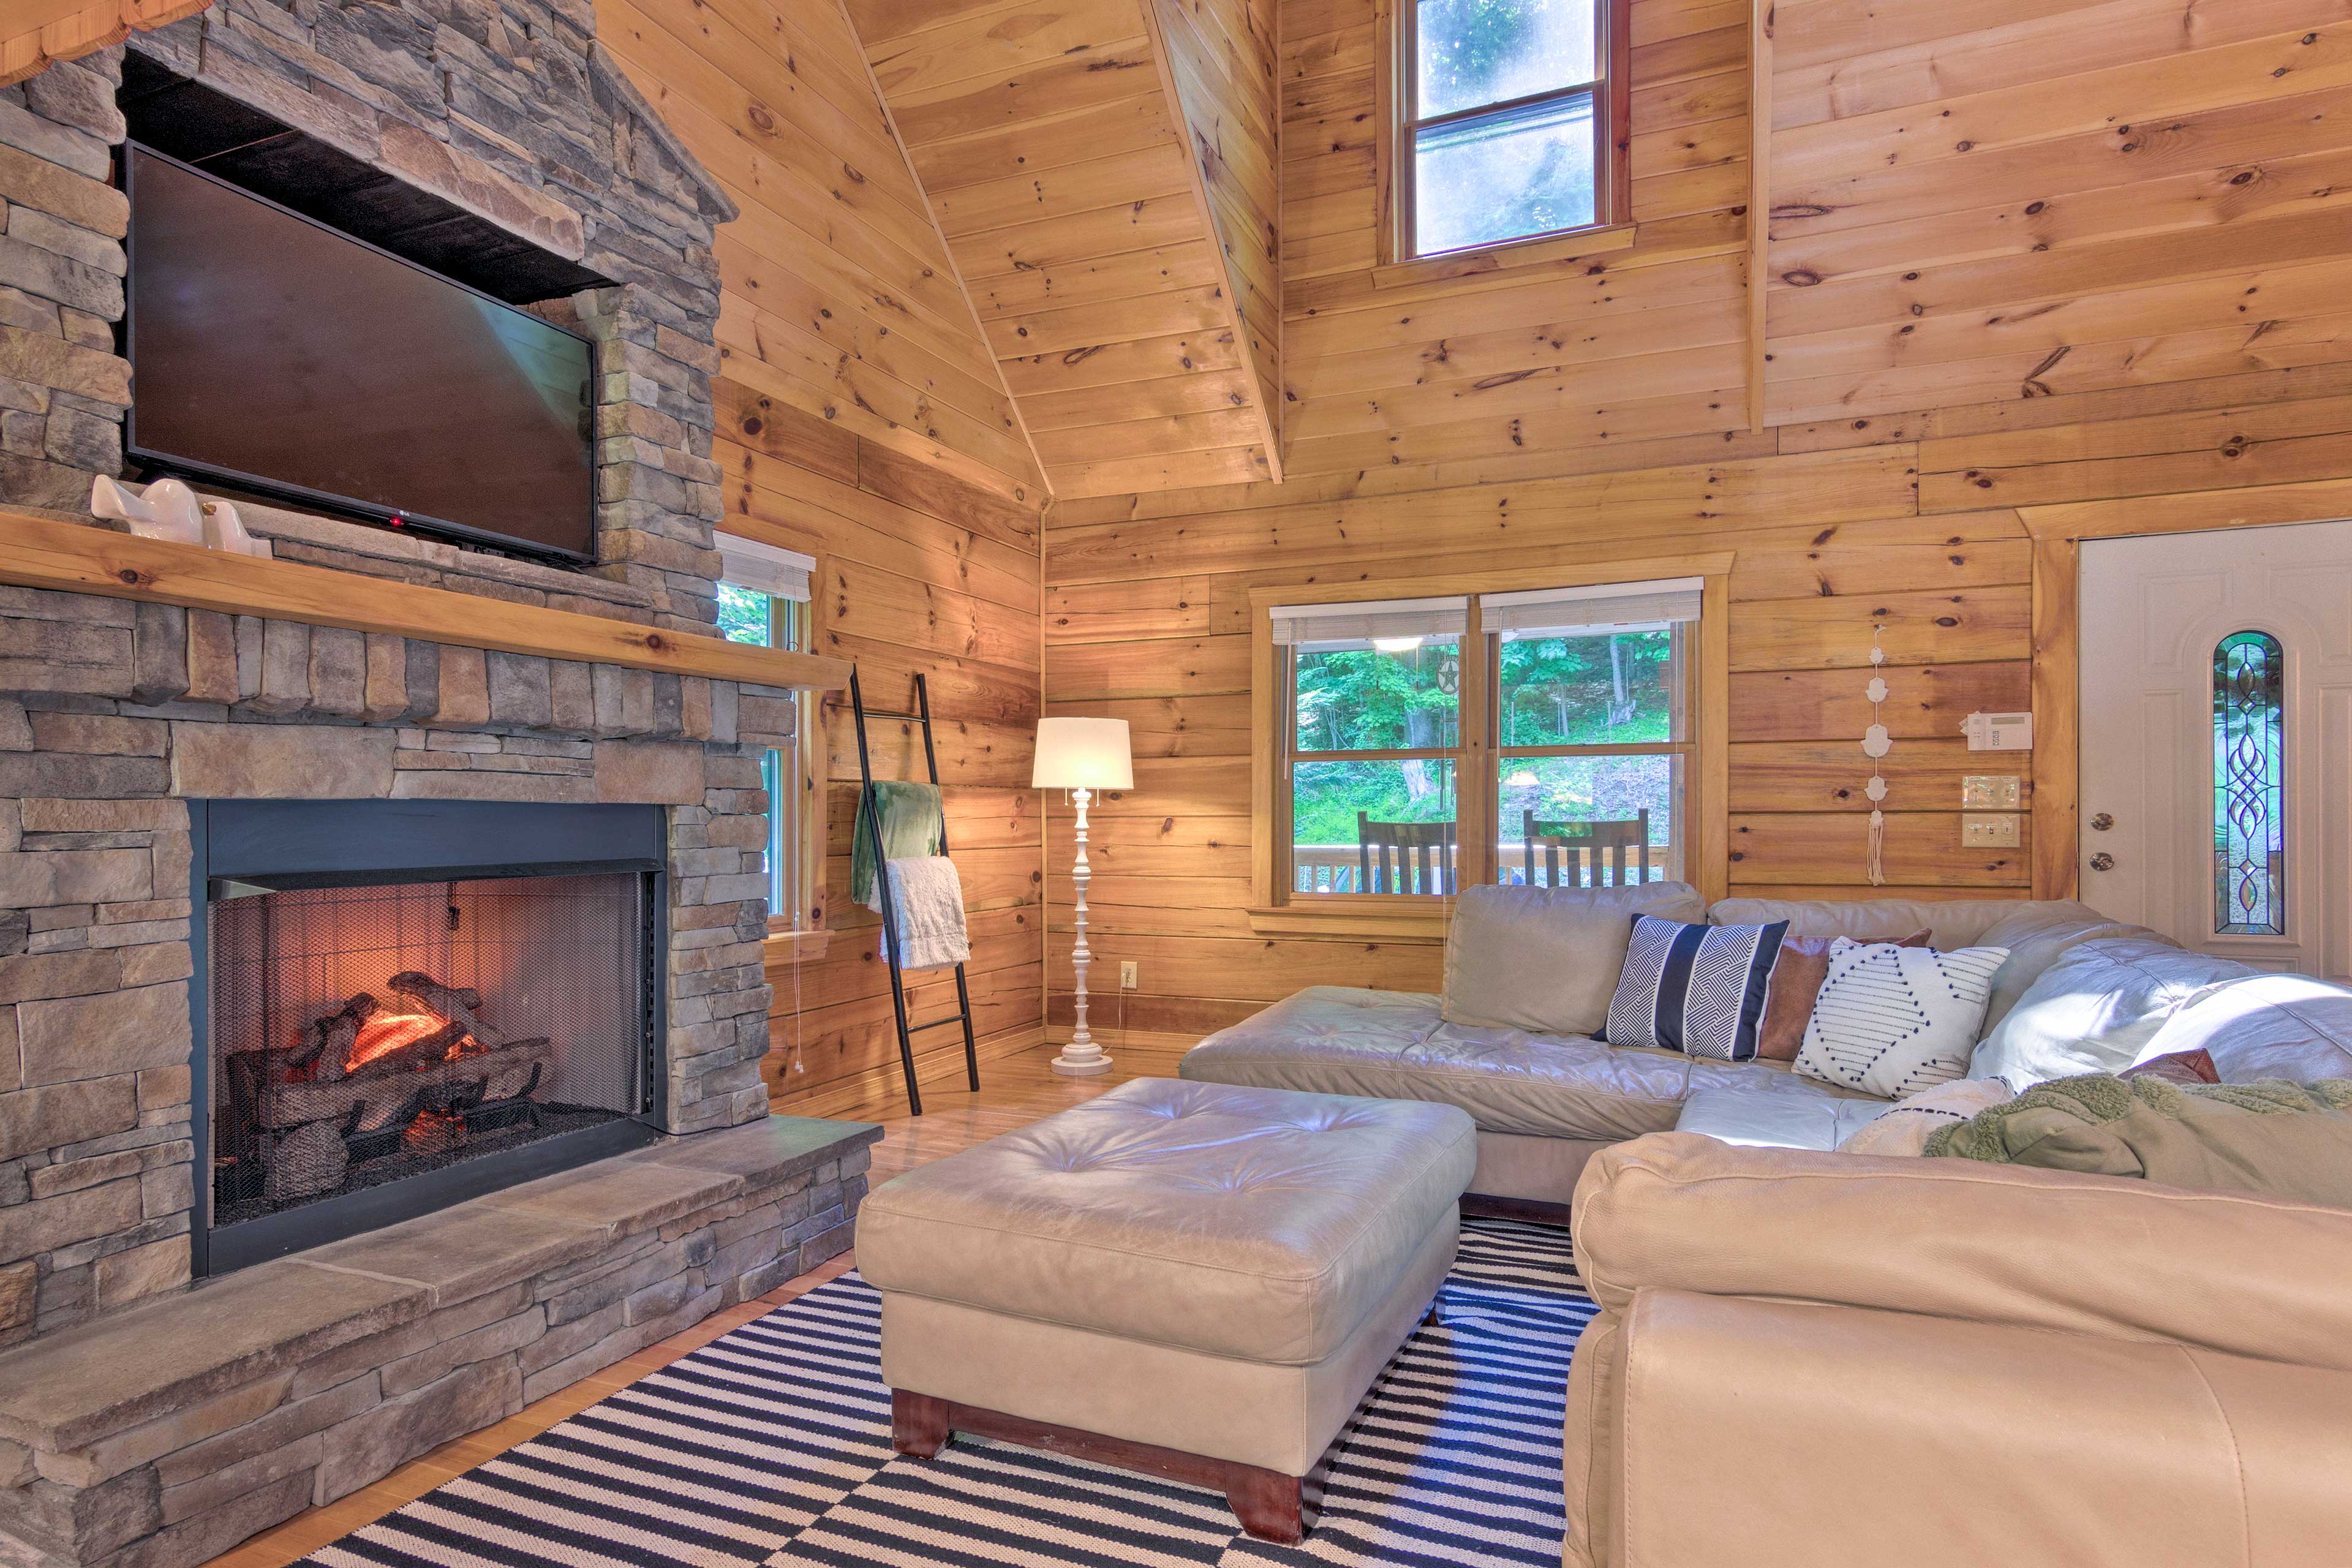 Living Area | Free WiFi | Smart TV | Decorative Fireplace